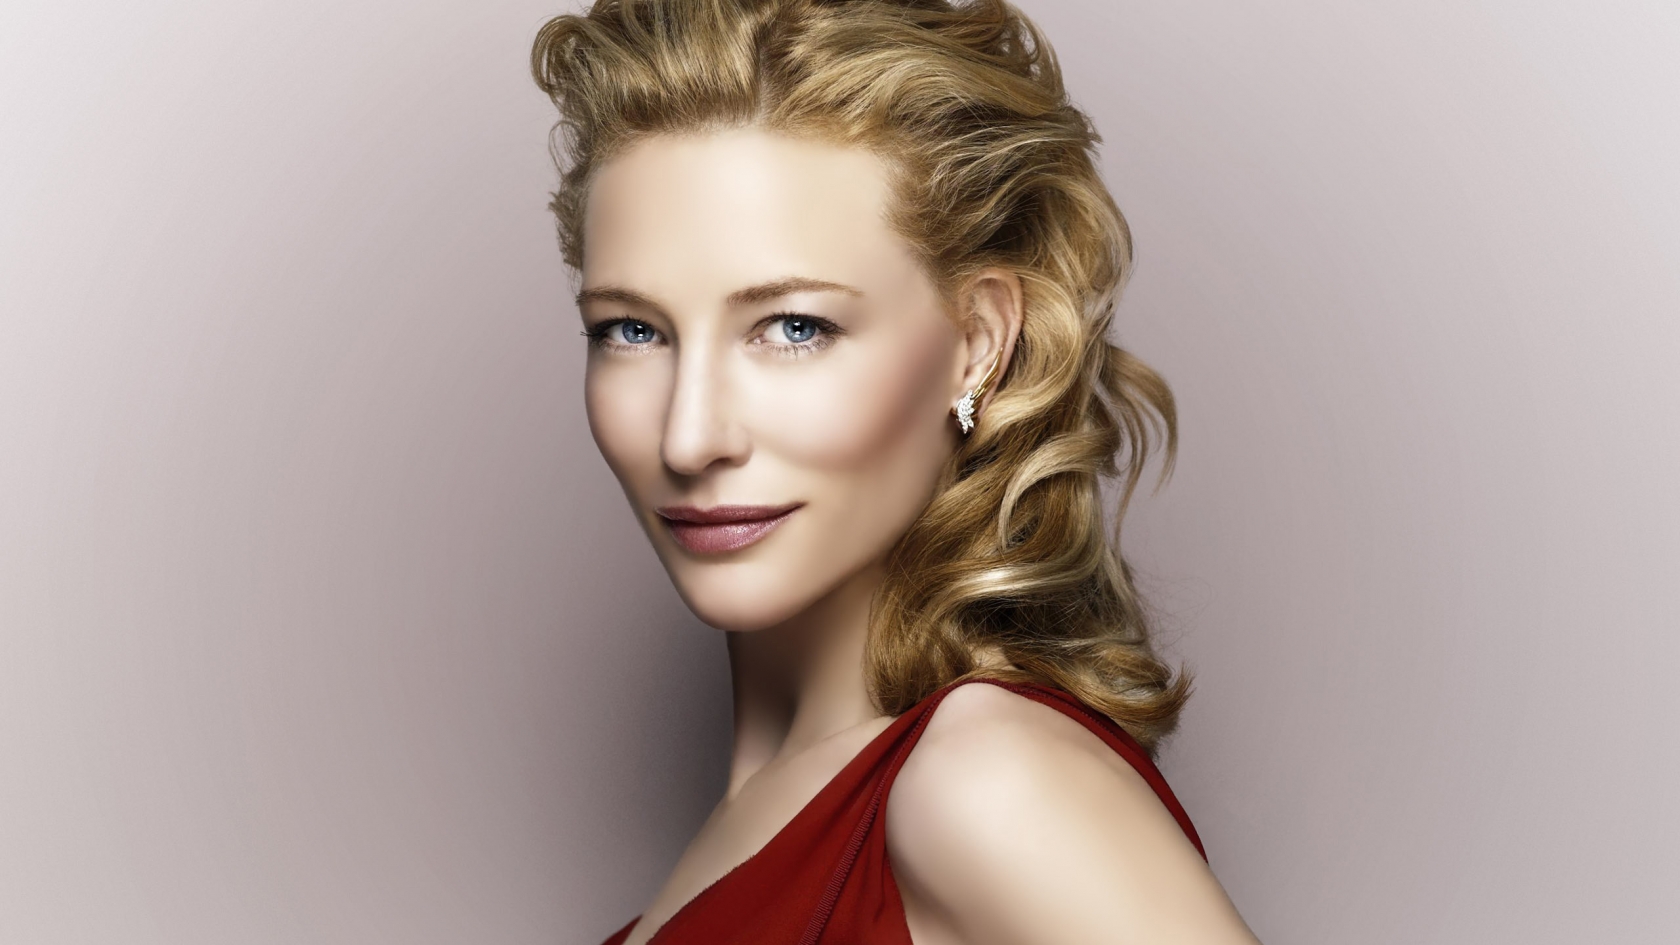 Cate Blanchett for 1680 x 945 HDTV resolution